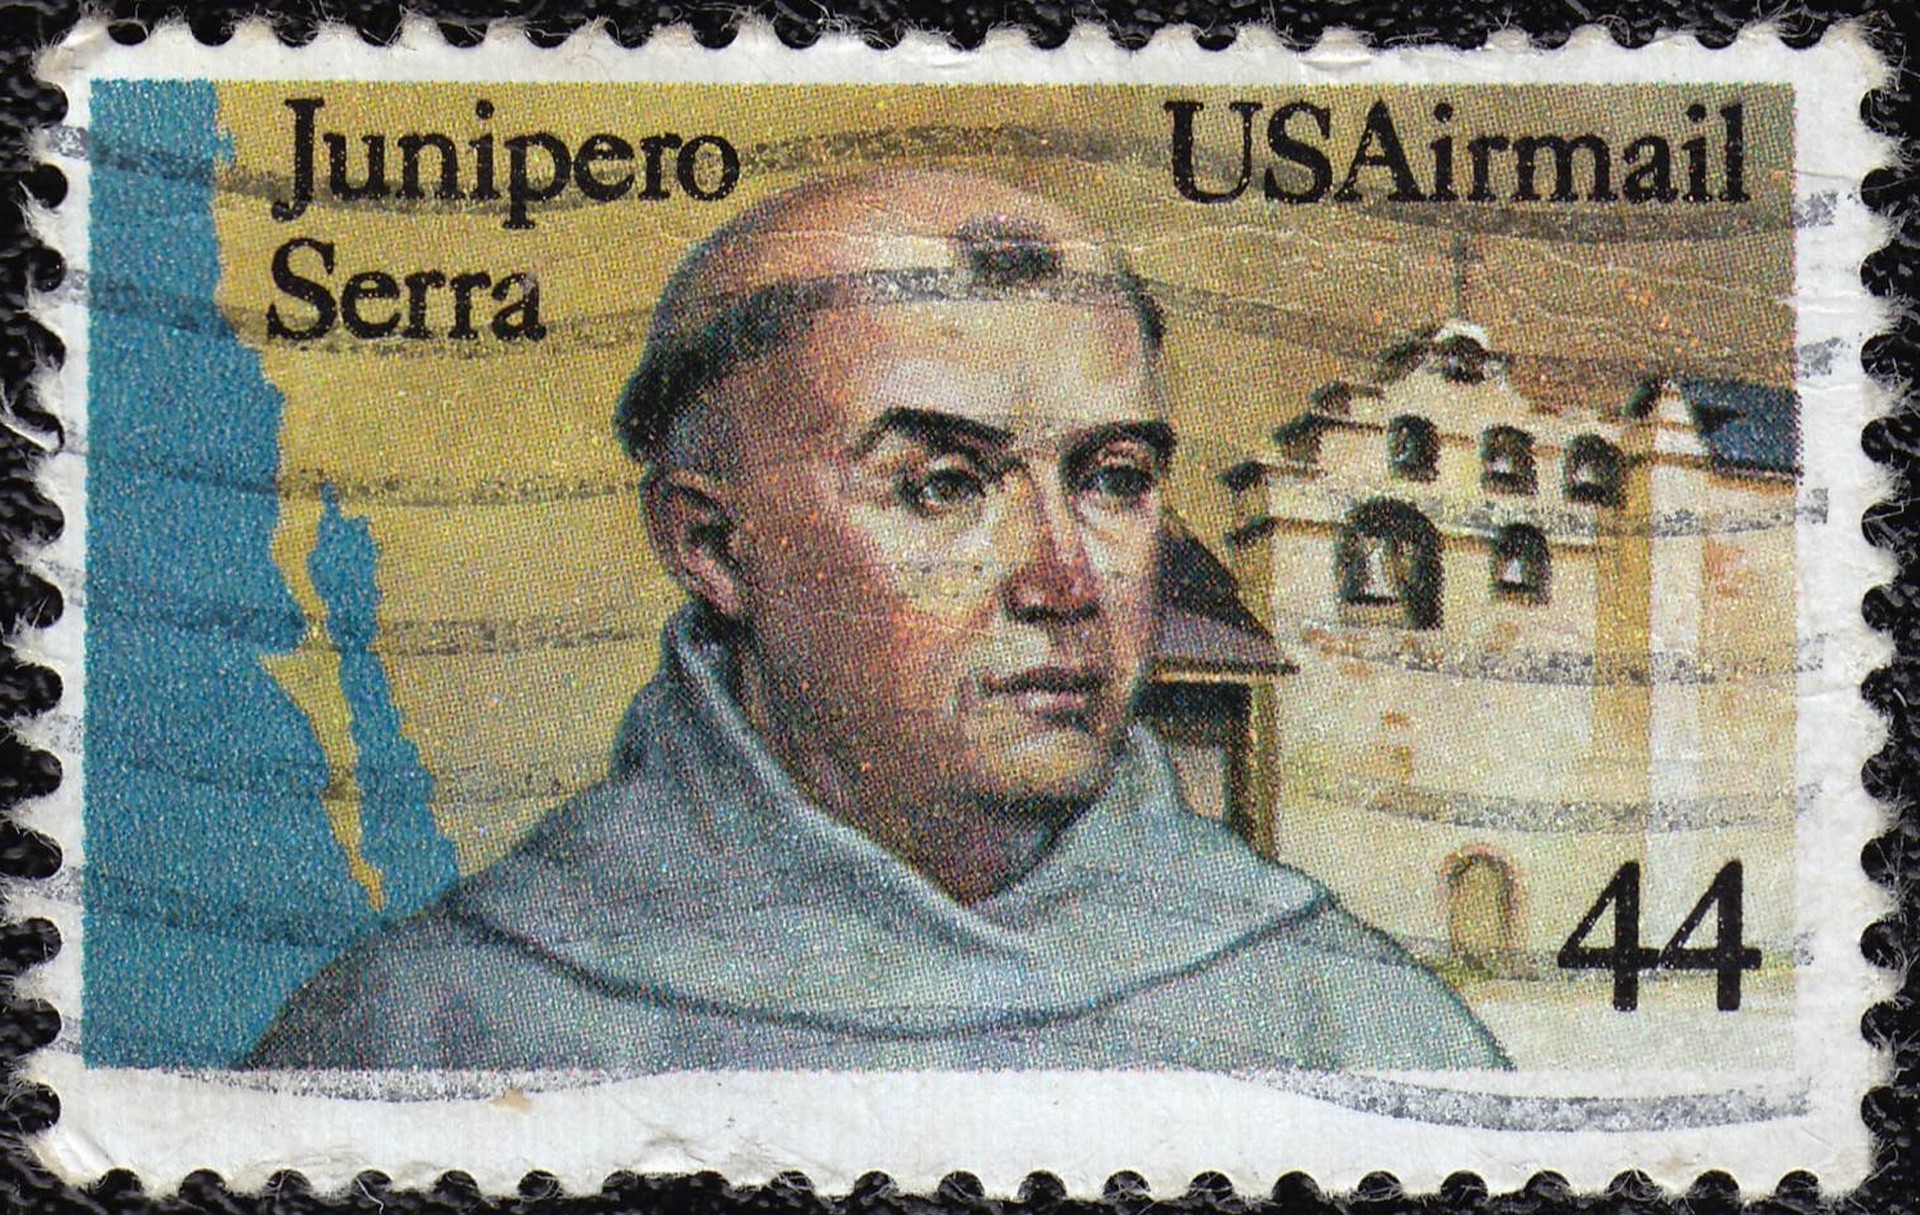 Le bienheureux Junipero Serra représenté sur un timbre de l'USAirmail (photo Wikimedia commons)